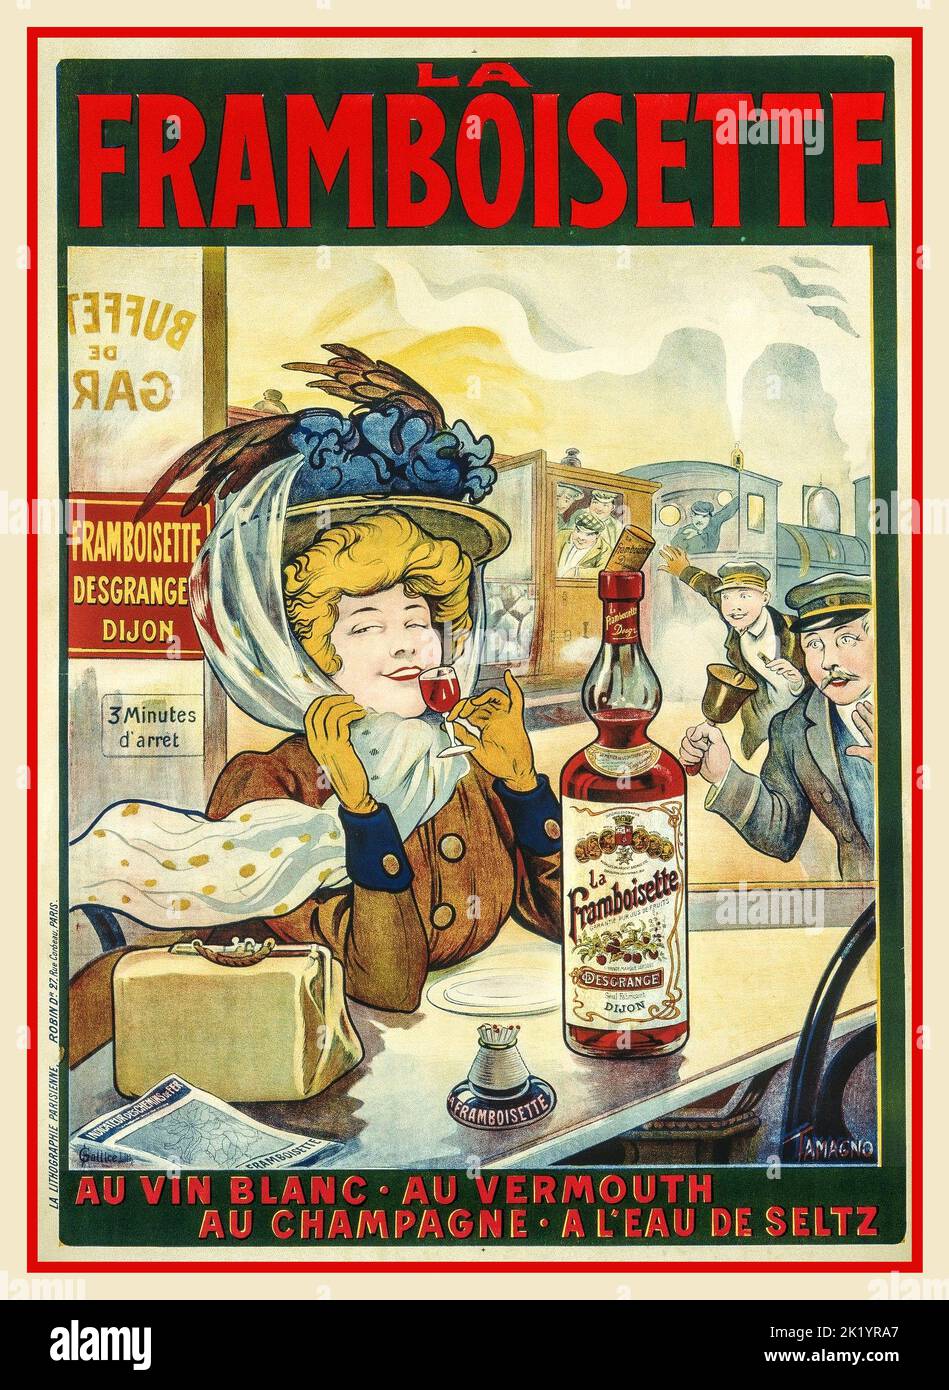 Vintage 1900s French Drinks Poster La Framboisette ein Raselbeerlikör aus Dijon, der einen Zug verzögert, als eine französische Passagierin sich die Zeit nimmt, ihr Getränk zu genießen. Au Vin Blanc, Au Vermouth, Au Champagne A L'Eau de Seltz Stockfoto